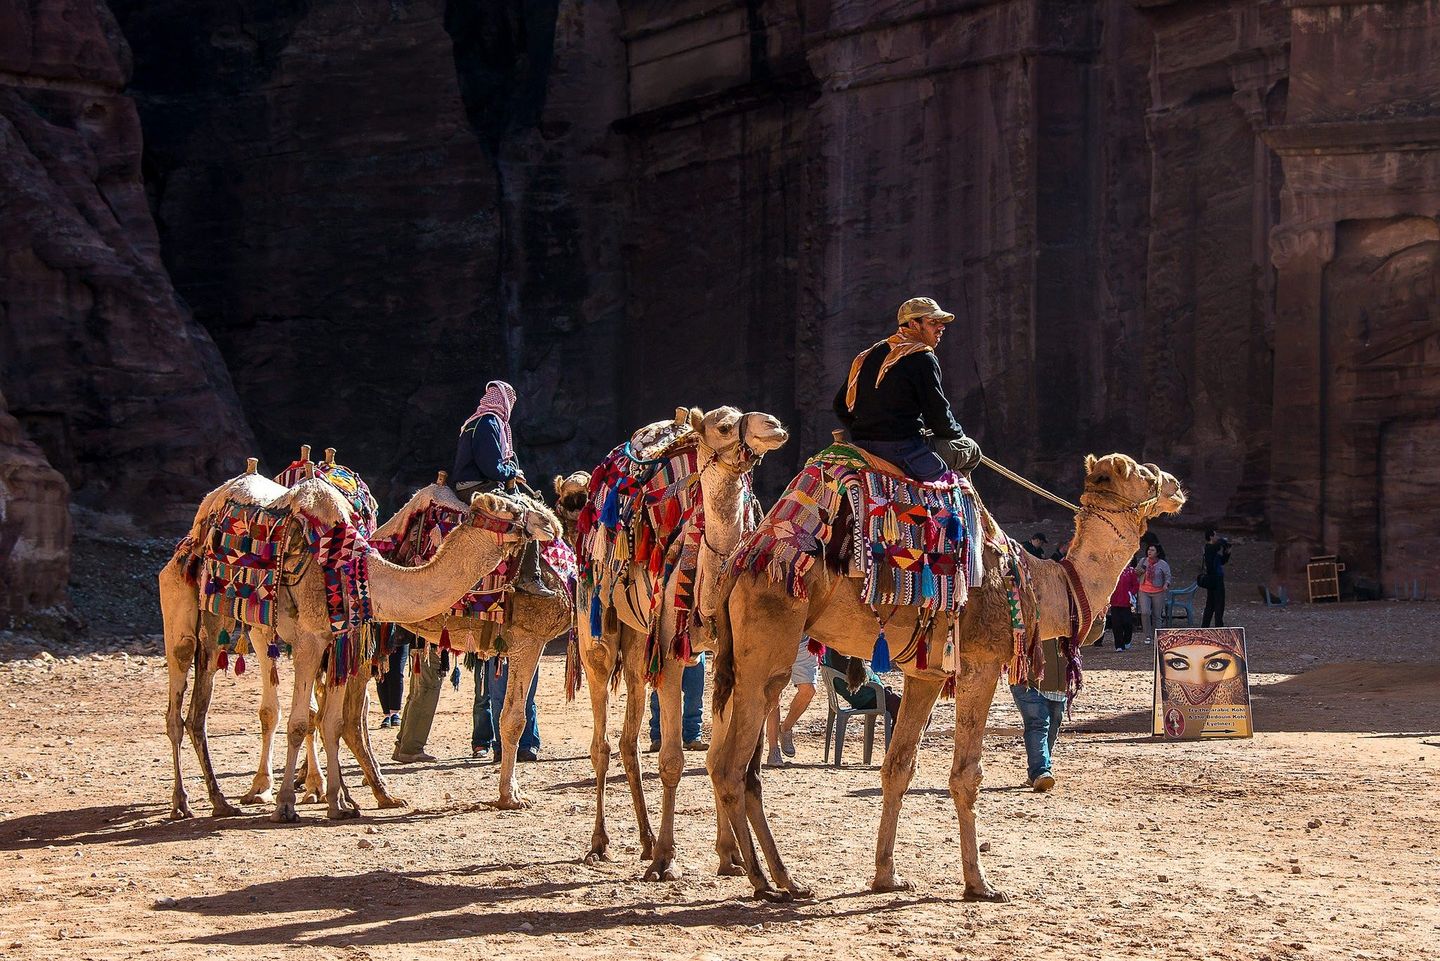 Men riding camels